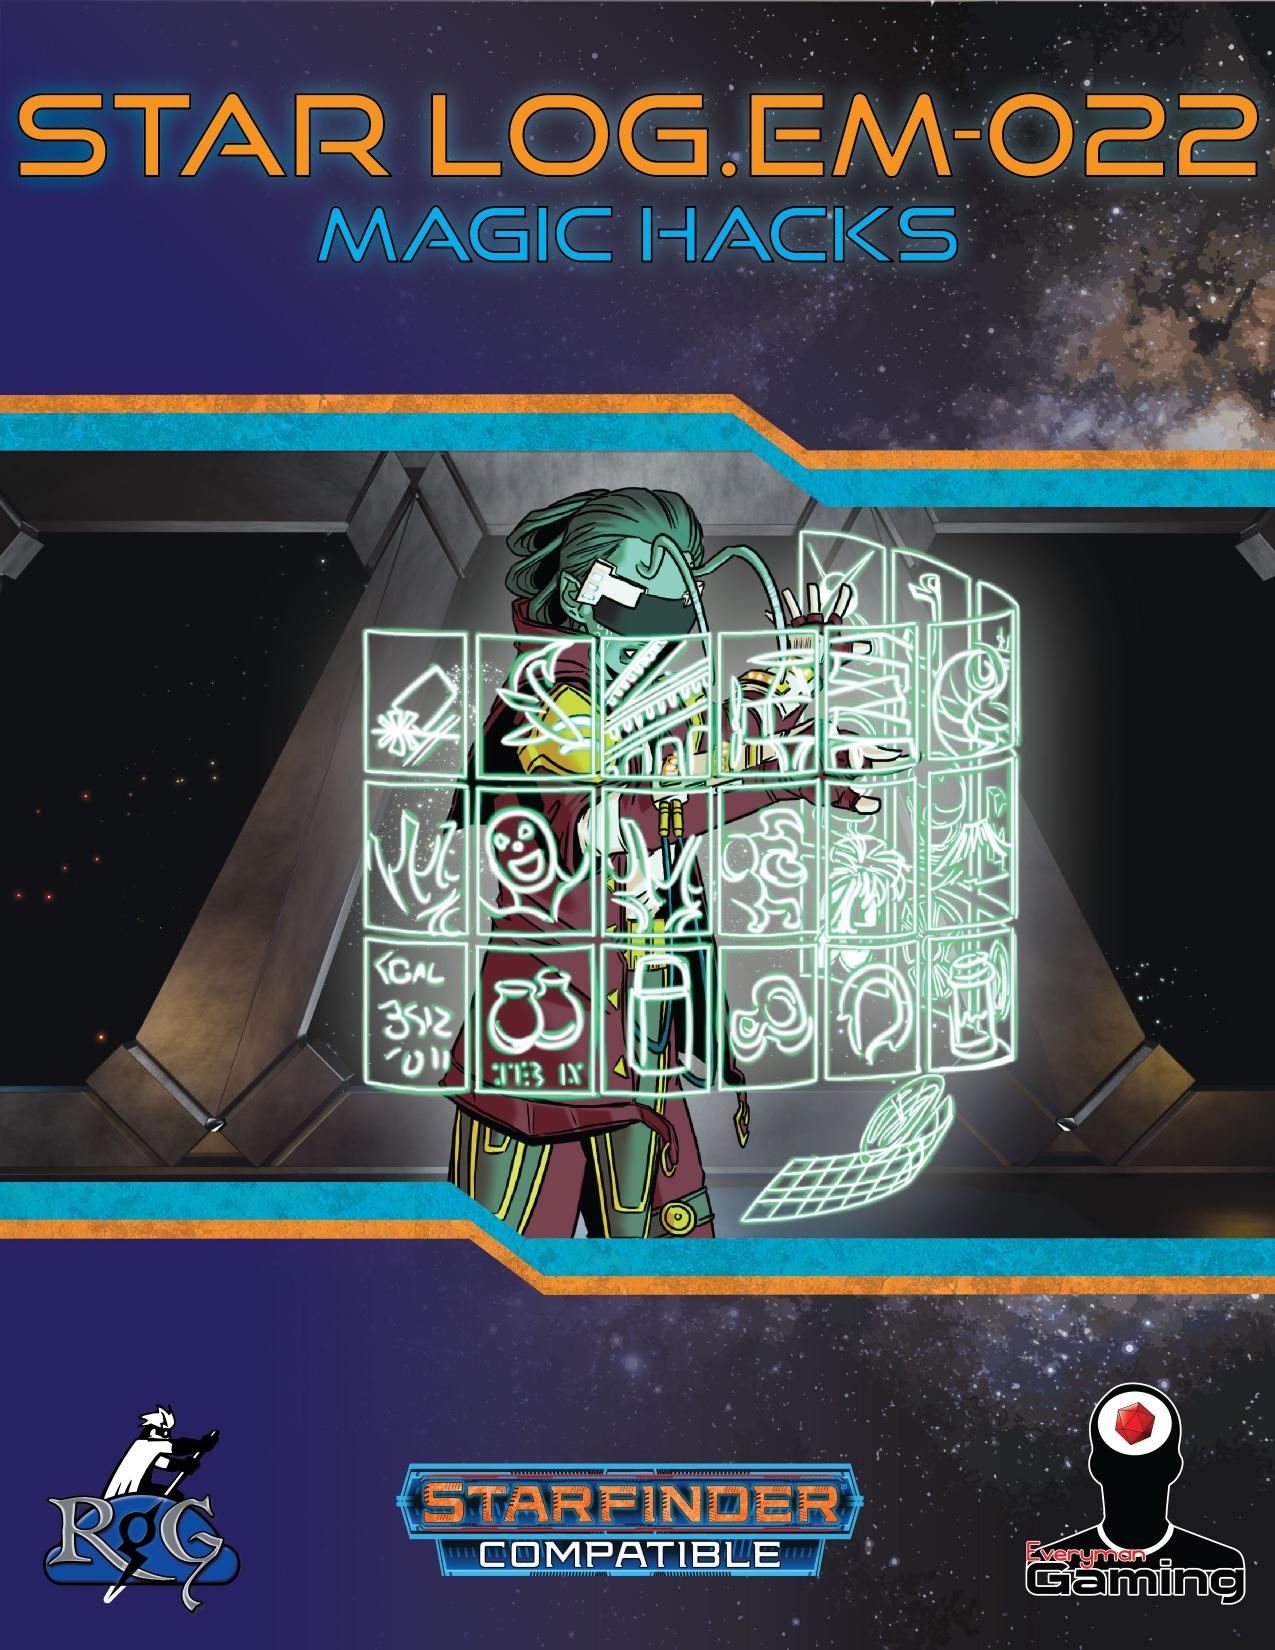 Star LogEM-022 Magic Hacks